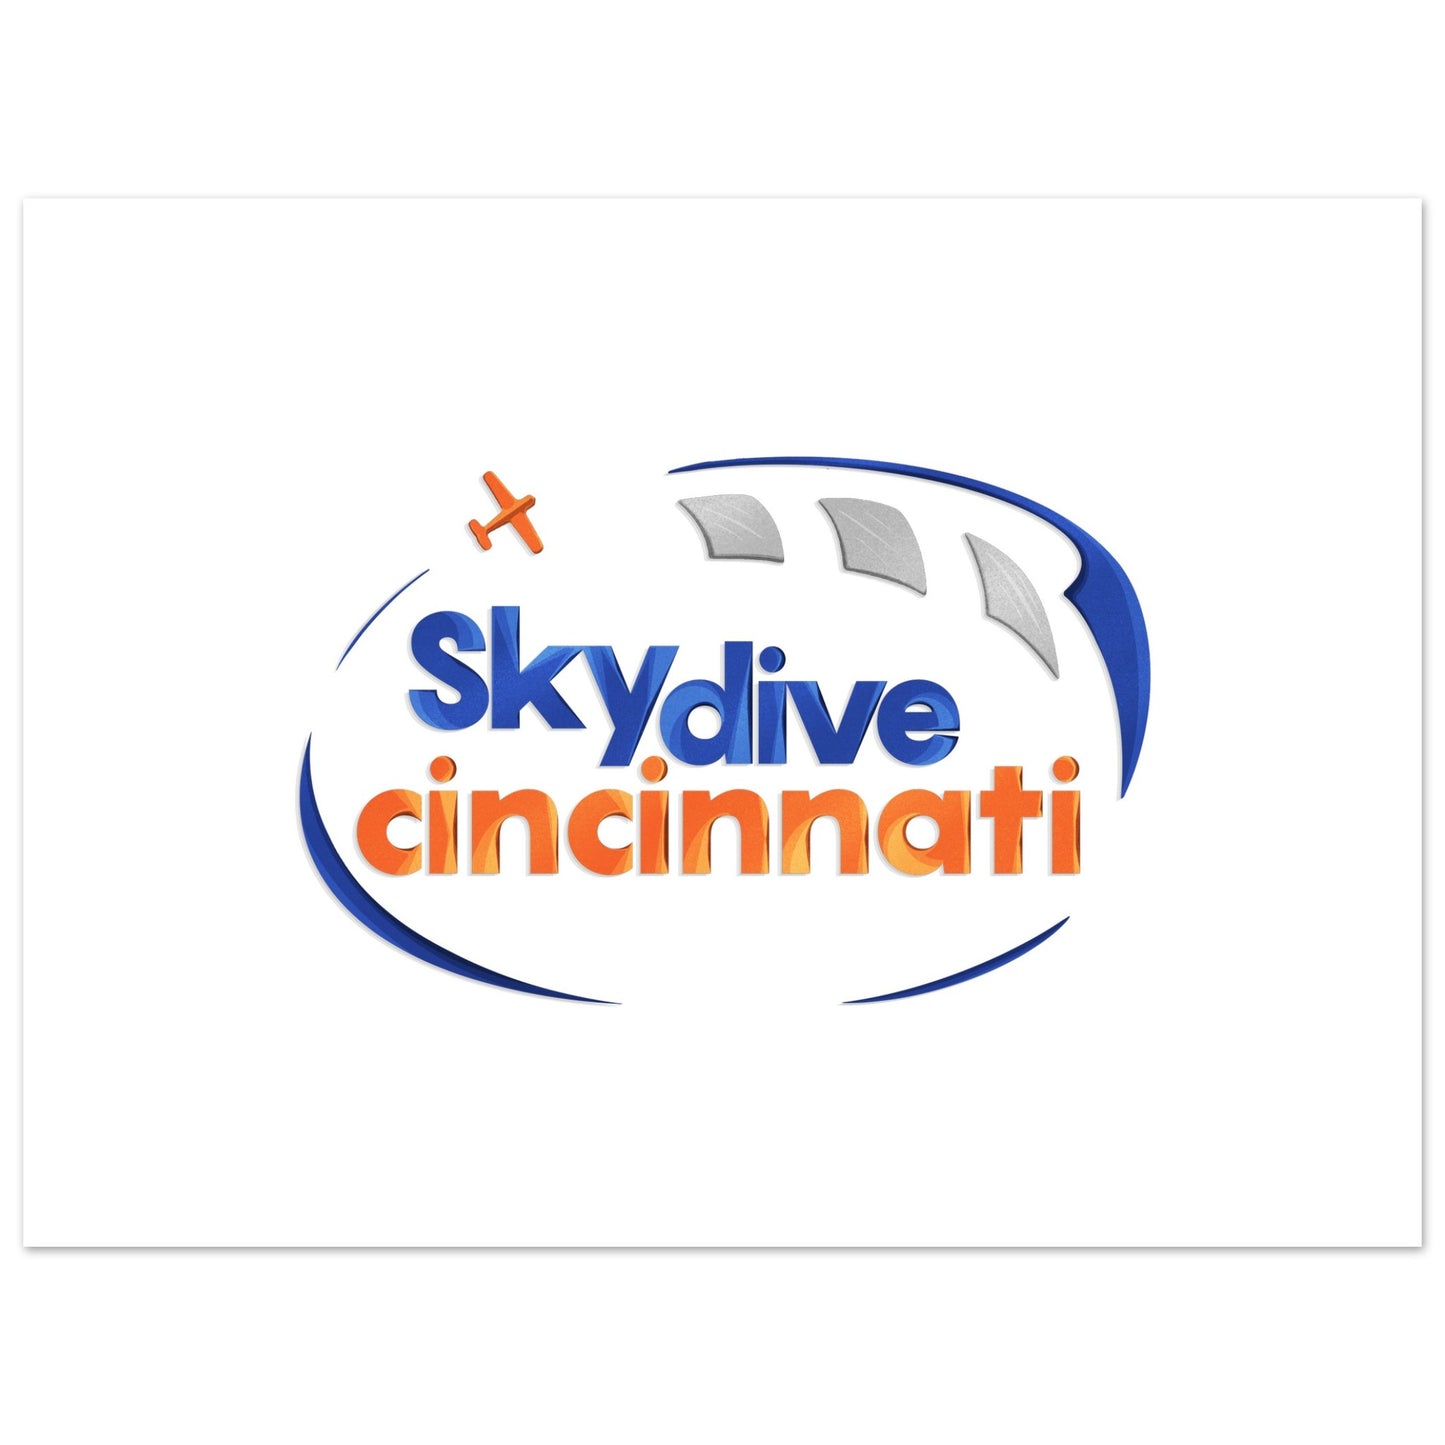 Skydive Cincinnati - Premium Matte Paper Poster